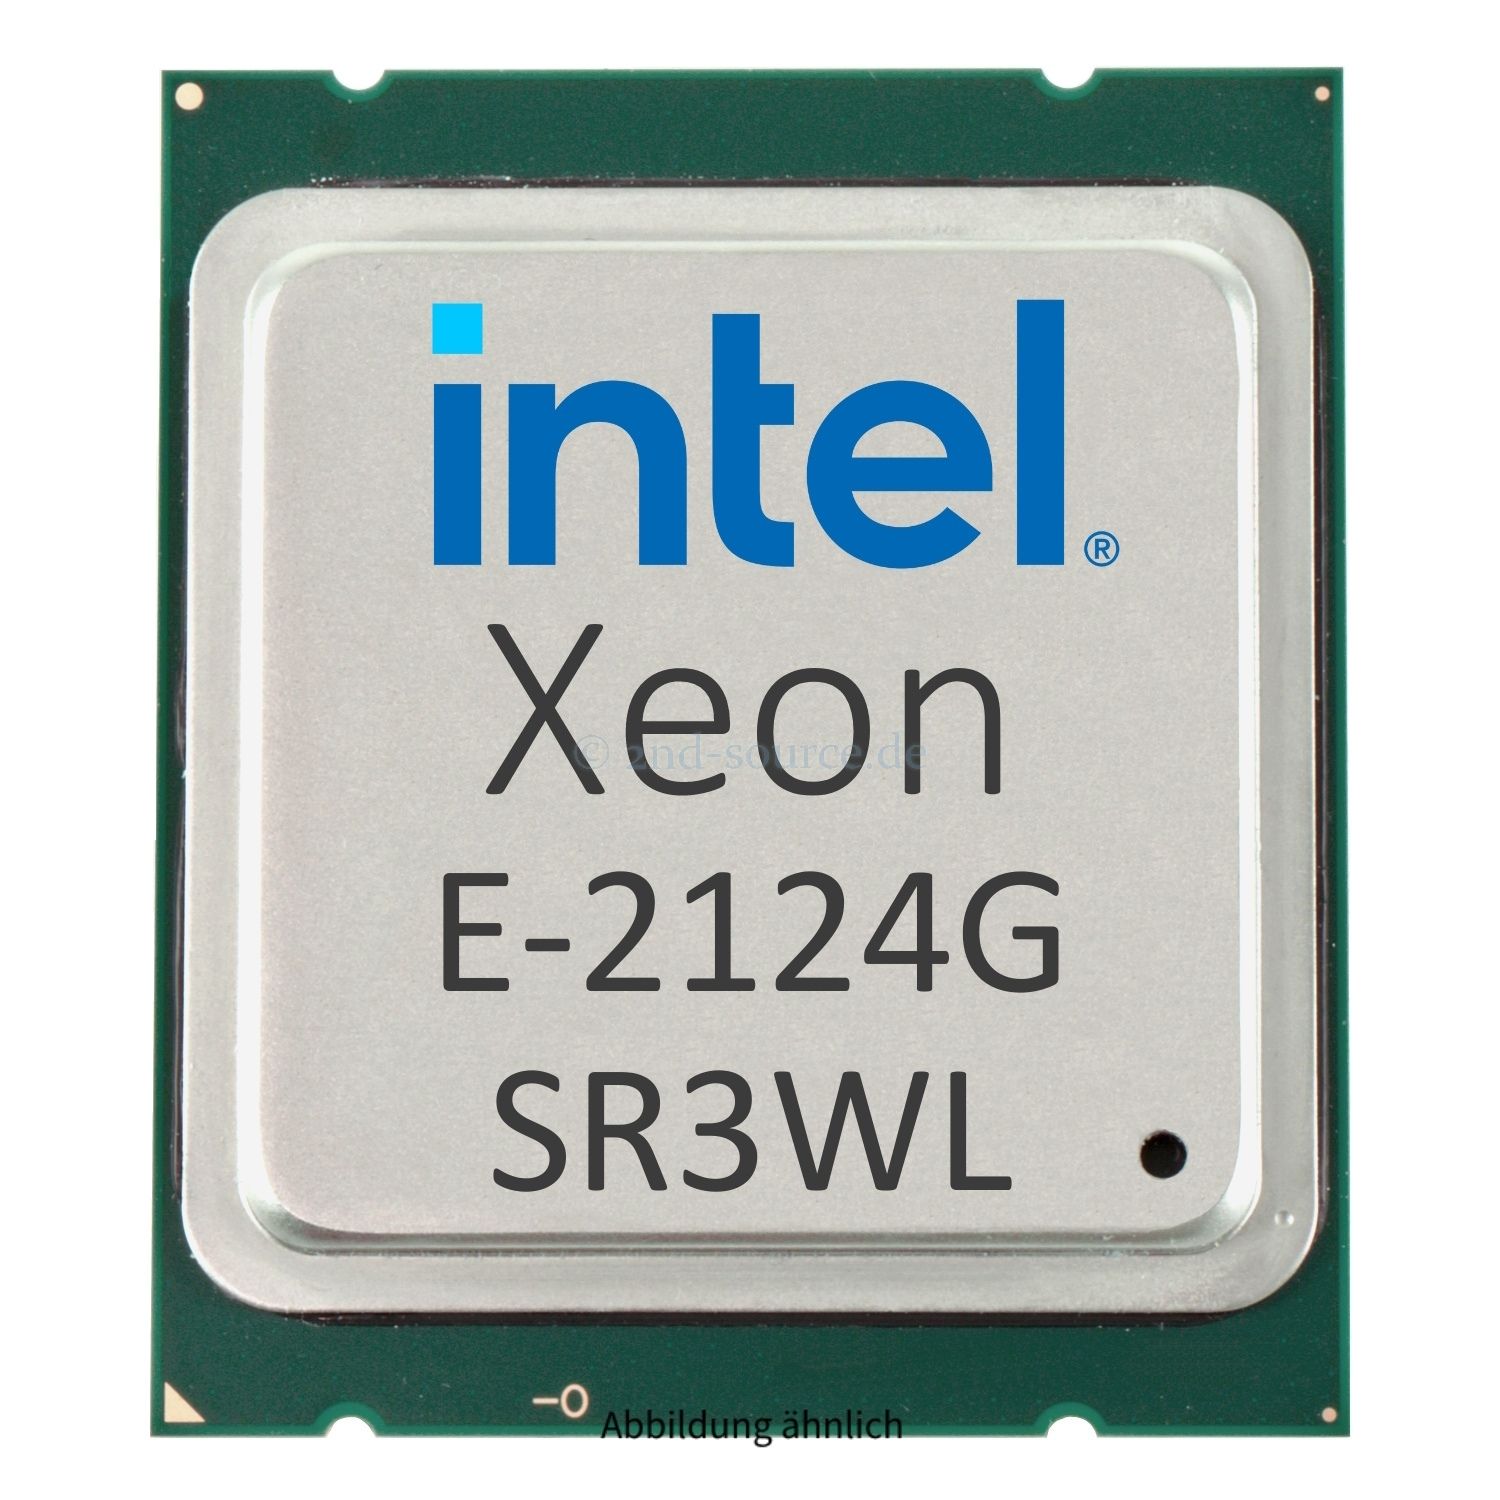 Intel Xeon E-2124G 3.40GHz 8MB 4-Core CPU 71W SR3WL CM8068403654114